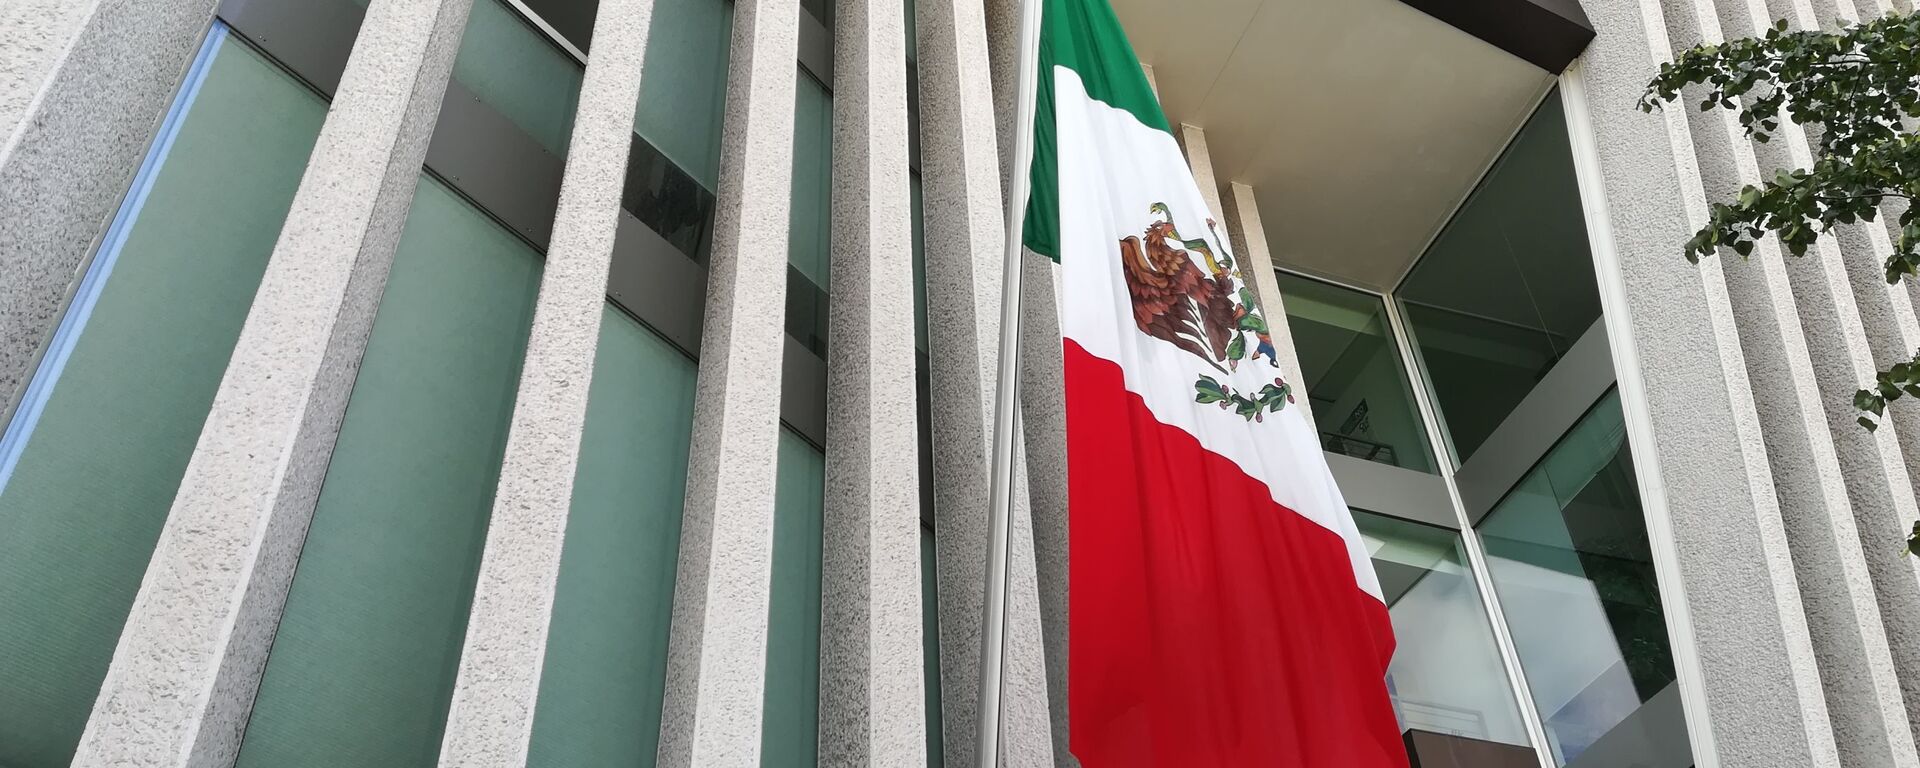 Bandera de México - Sputnik Mundo, 1920, 24.03.2021